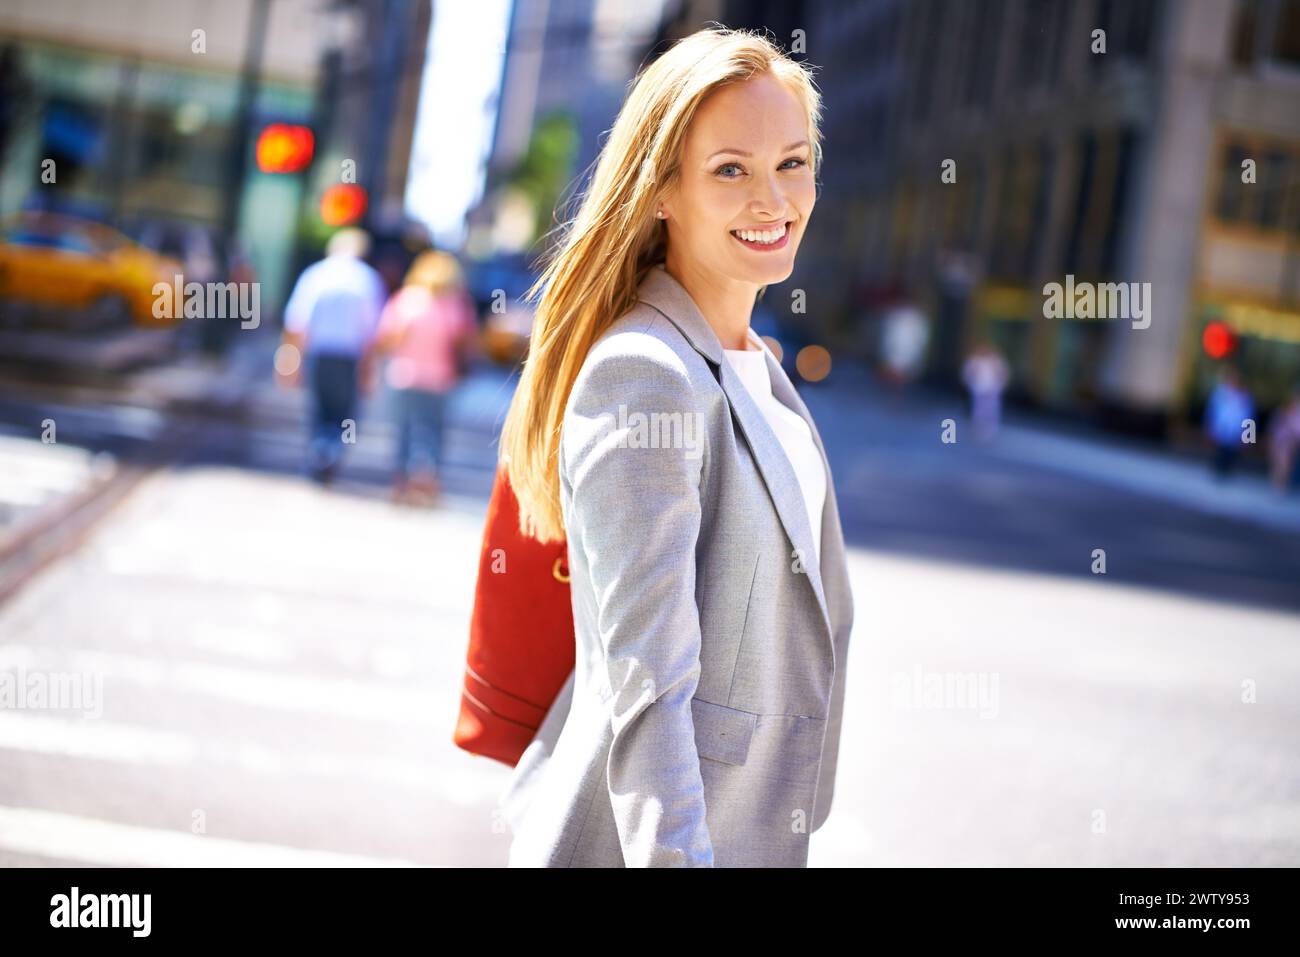 Donna, ritratti e sorrisi in città, viaggi e spostamenti per lavoro o carriera. Designer, lavoro e New york Street con urban, estate e felicità Foto Stock